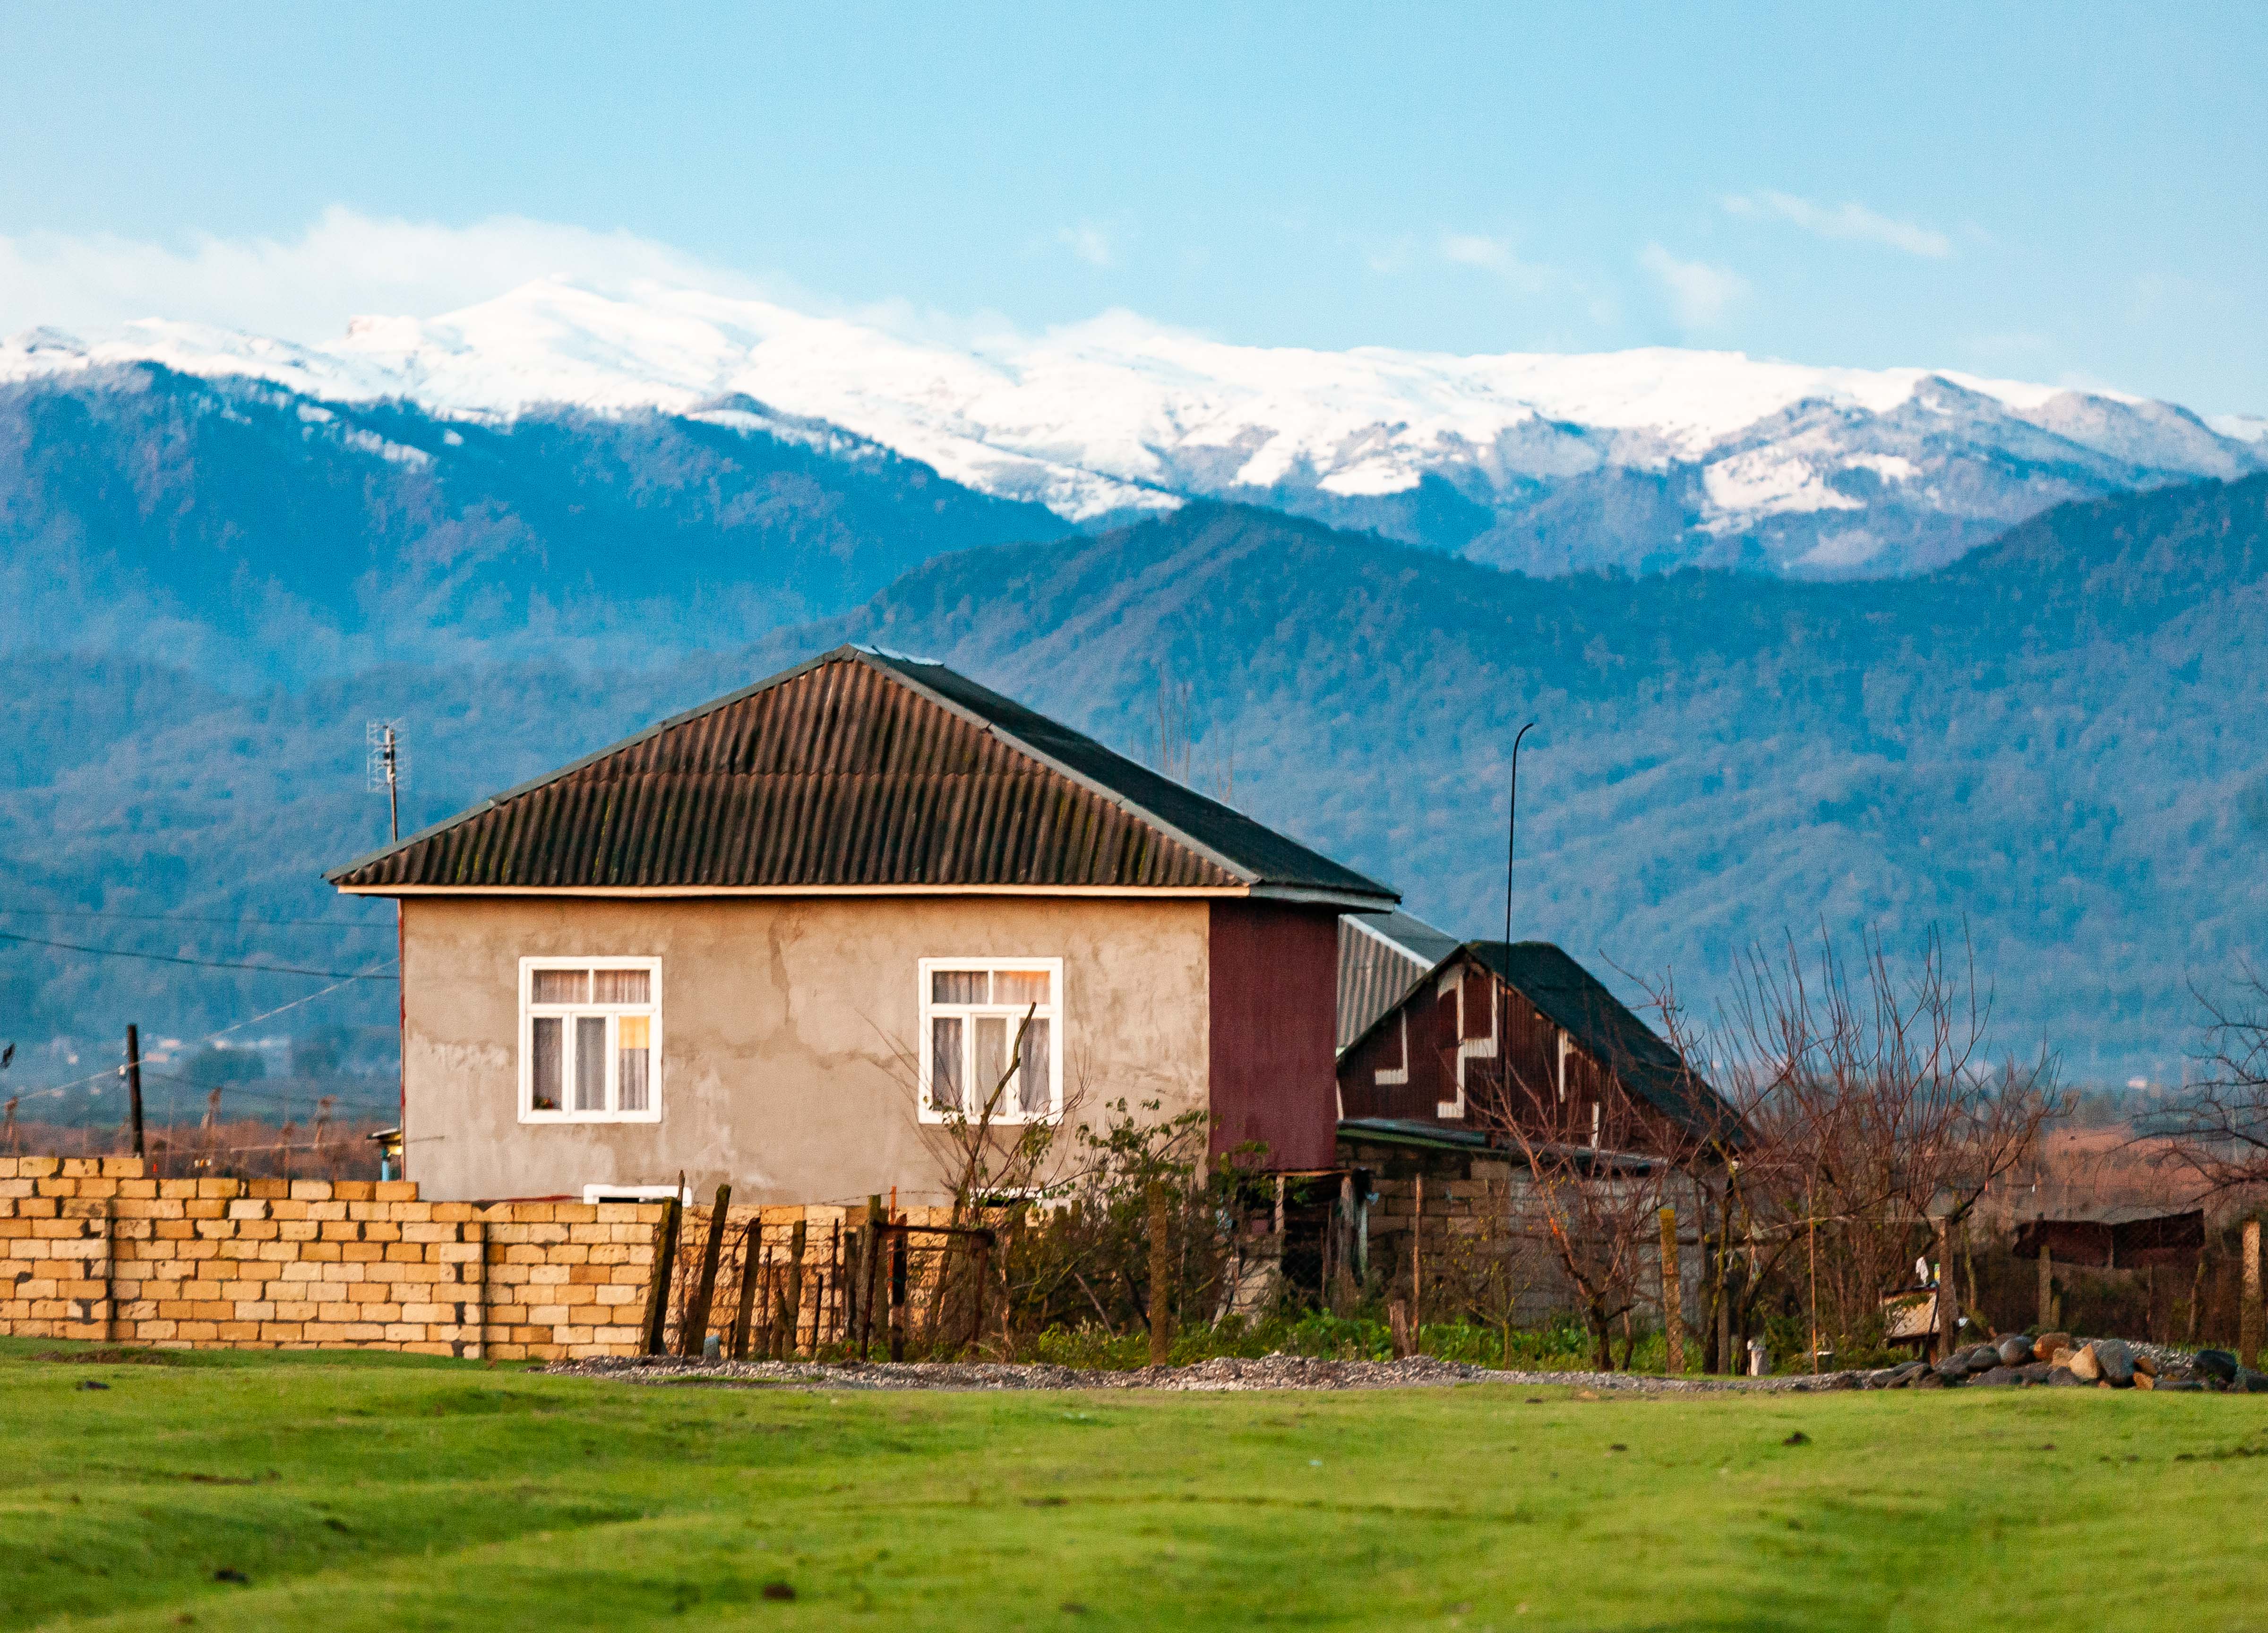 Azerbaijan, Lankaran (AZ-LAN) Prov, House And Mountains, 2009, IMG 9768